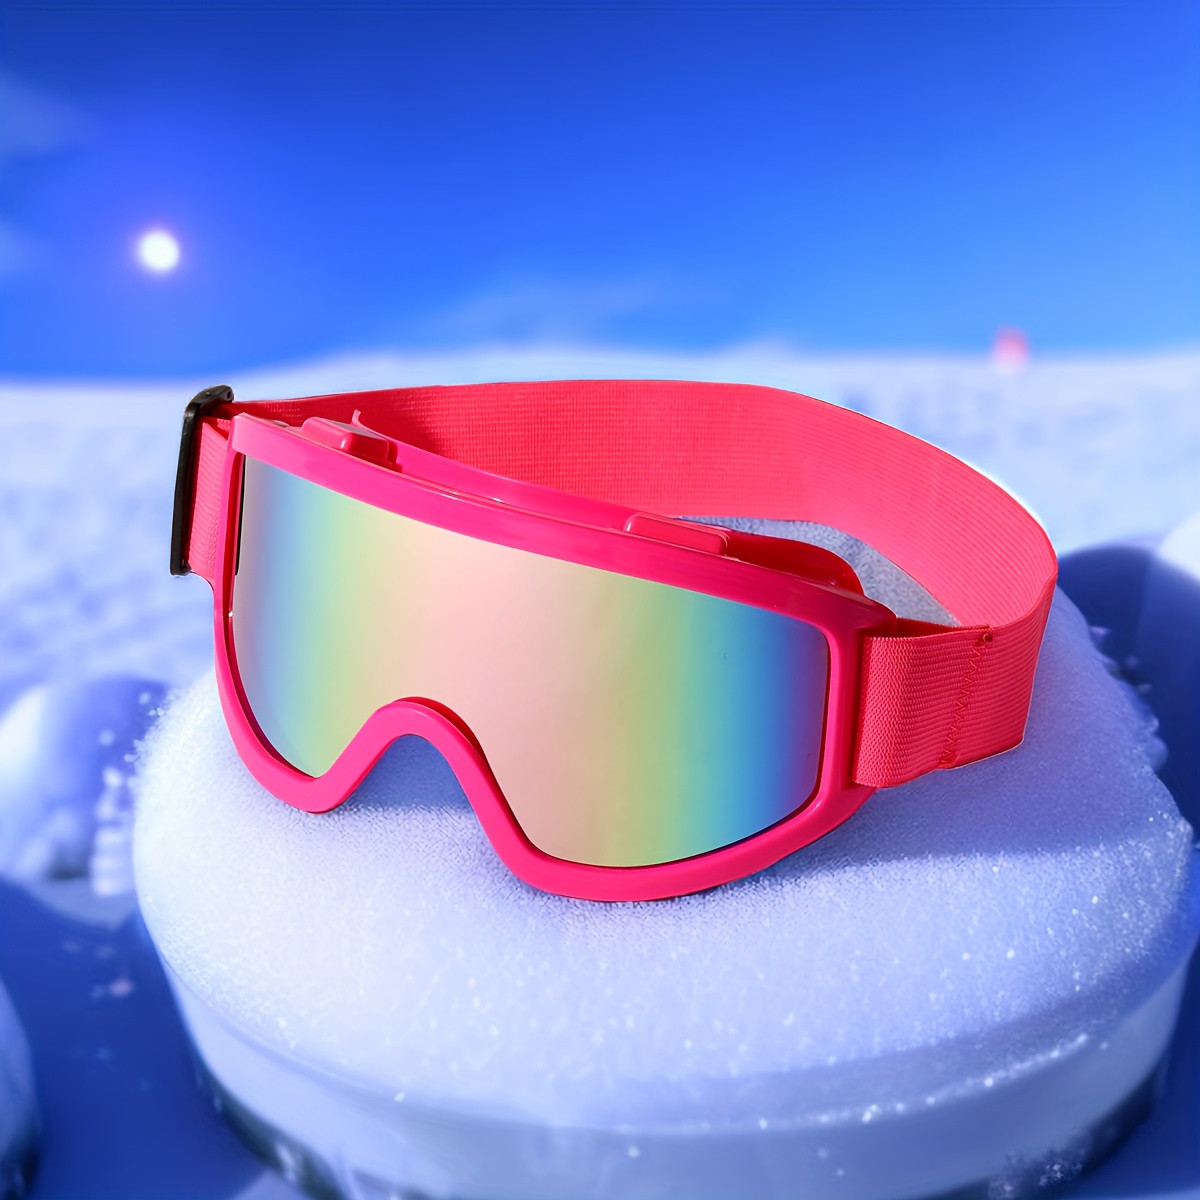 Mujer en gafas de esquí imagen de archivo. Imagen de deporte - 212500073